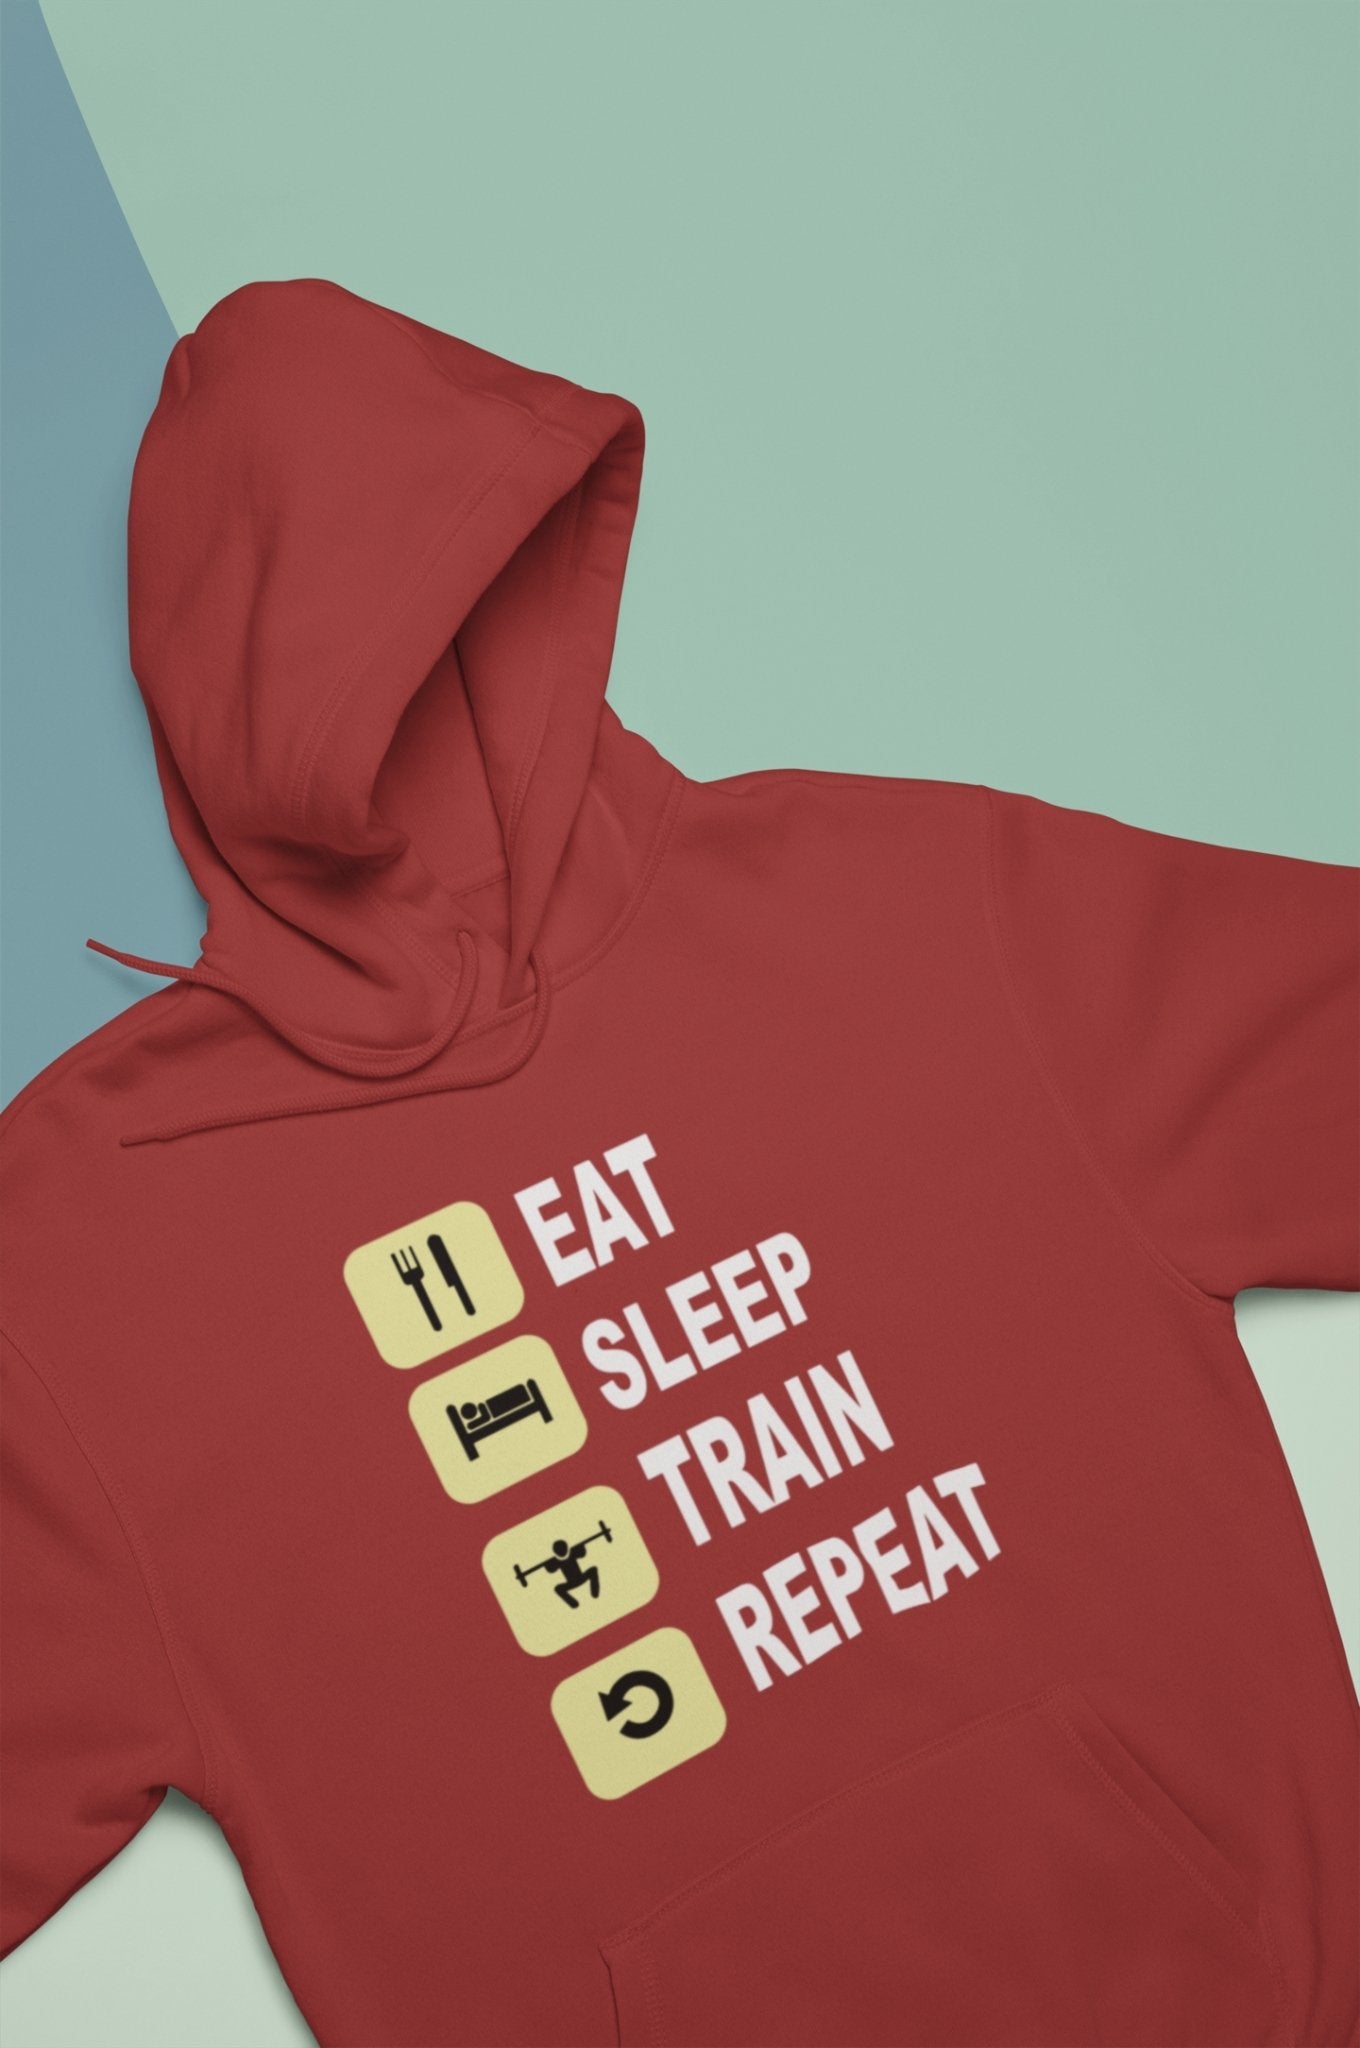 Eat Sleep Train Repeat Gym And Workout Men Hoodies-FunkyTeesClub - Funky Tees Club